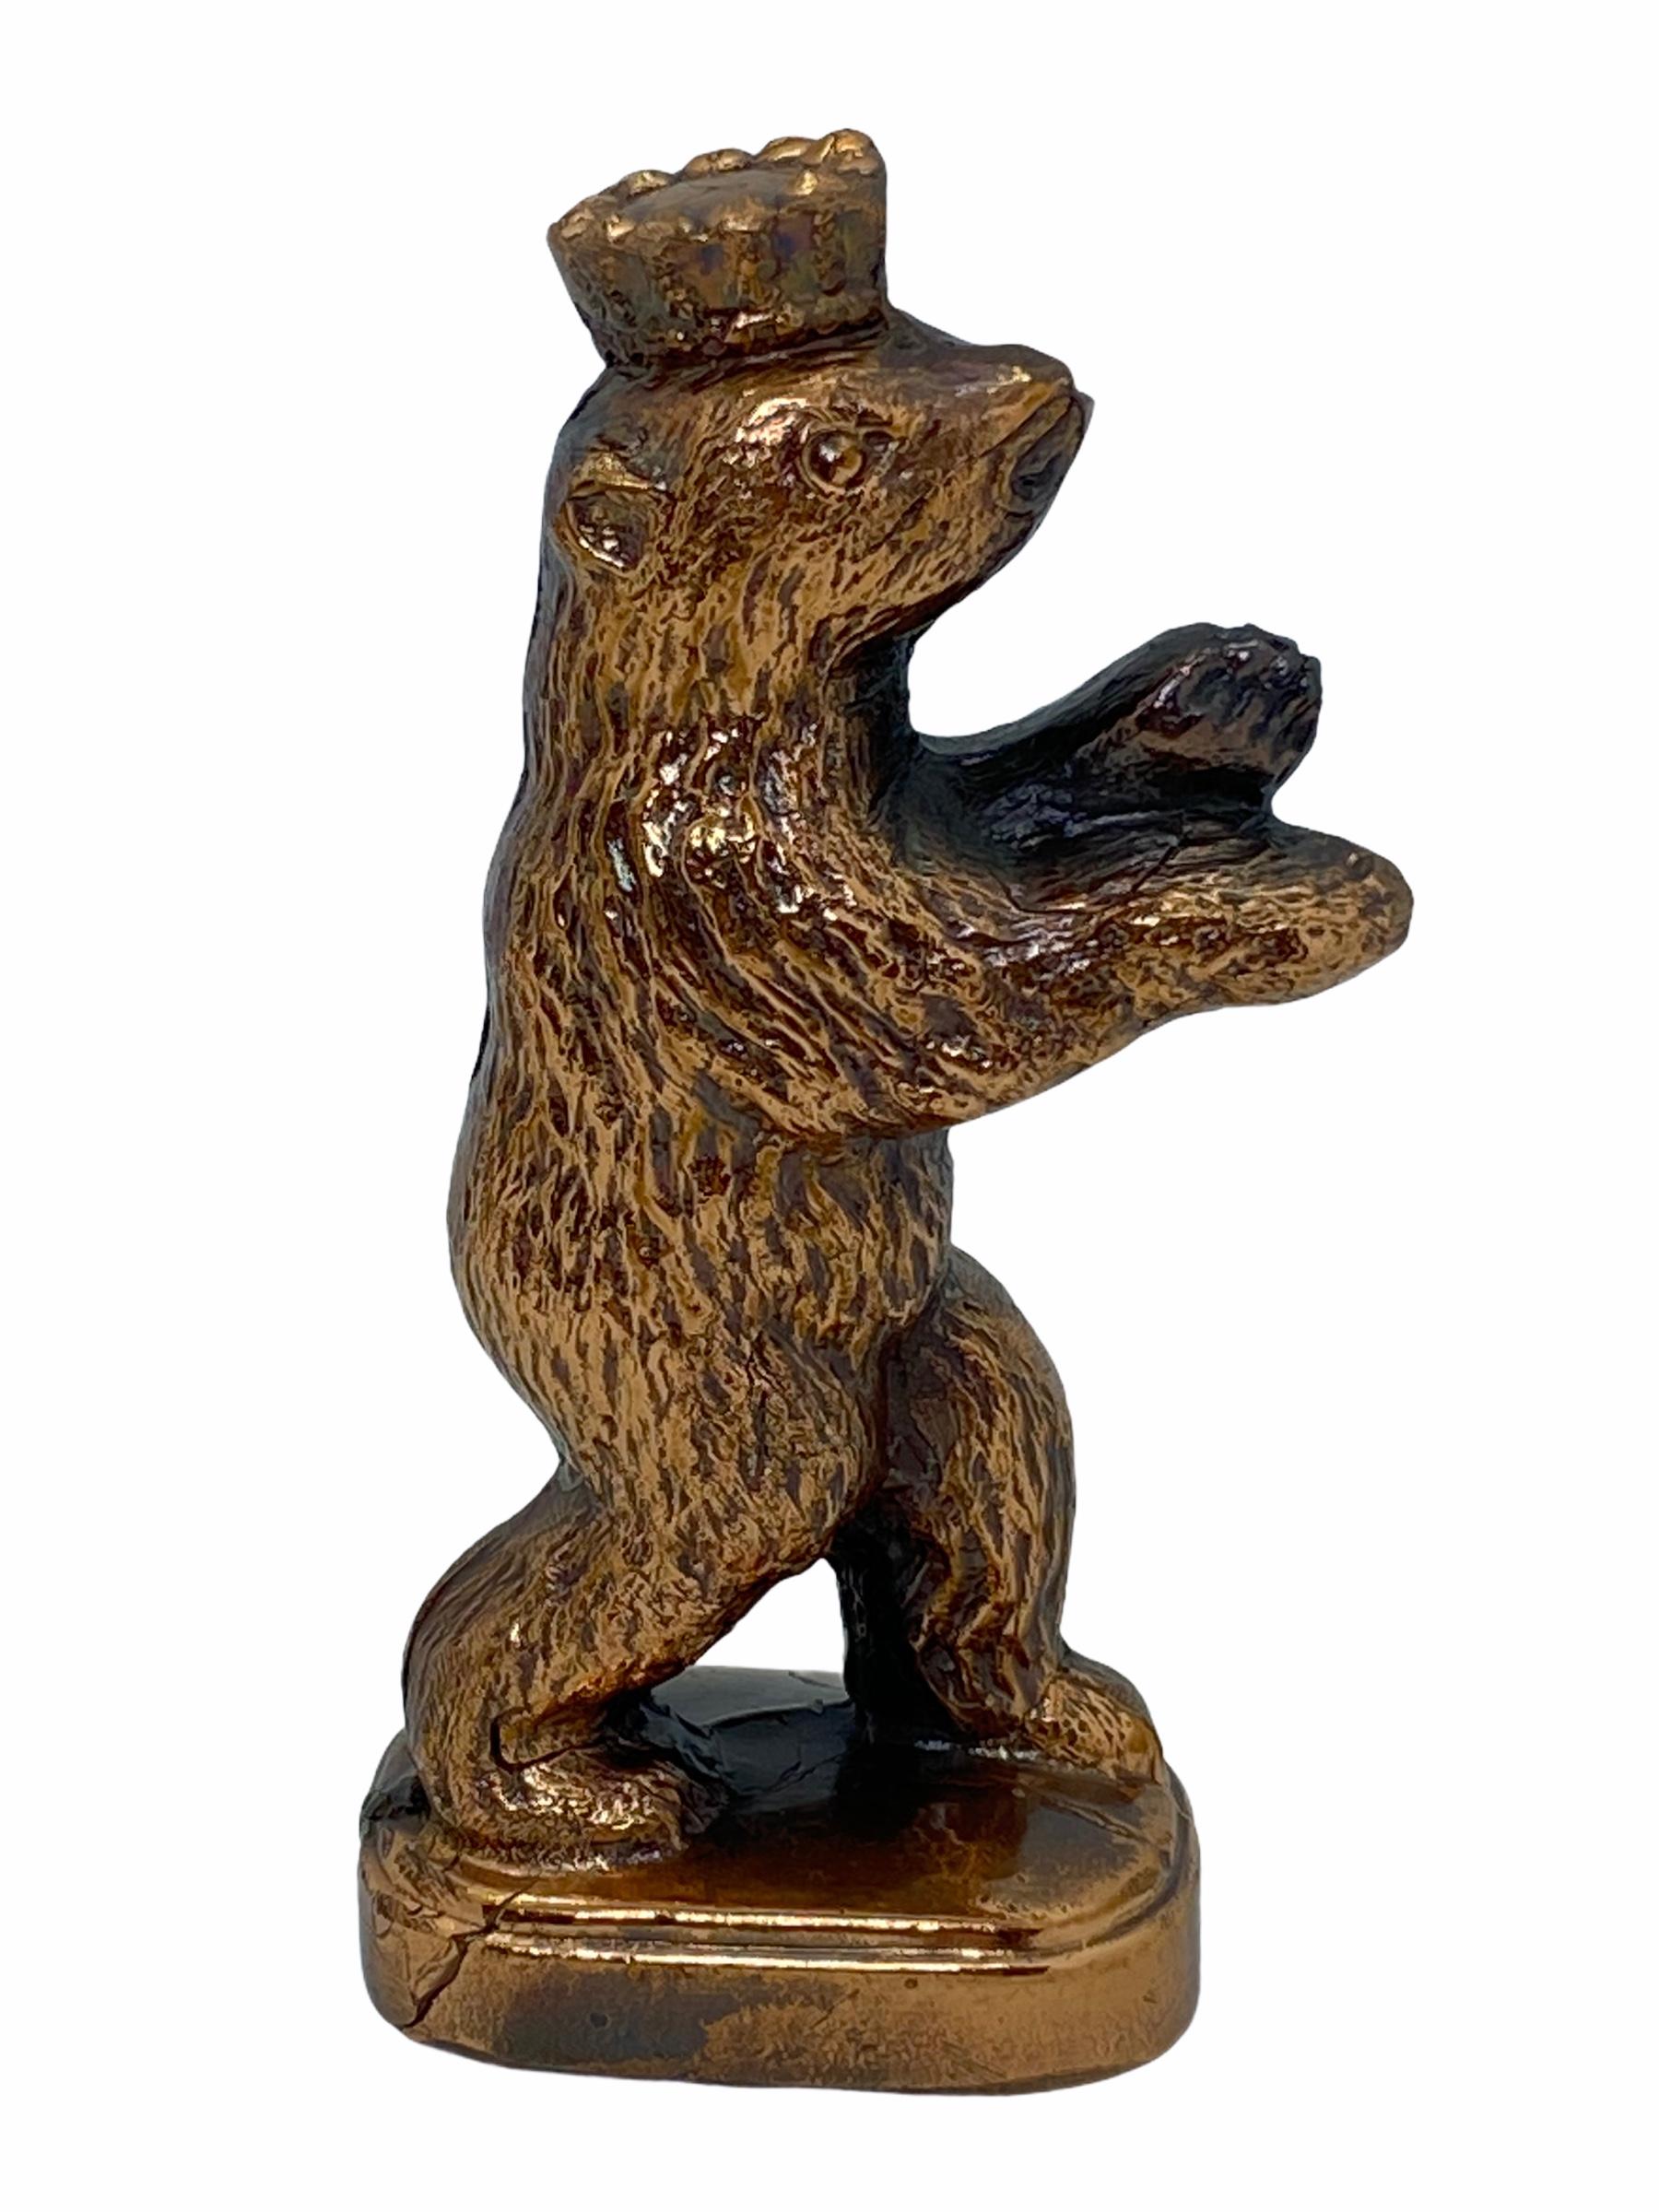 Statue d'ours berlinois décorative classique. Une certaine usure avec une belle patine, mais c'est de l'ancien. En métal. Cet objet a été acheté comme souvenir à Berlin et a été fabriqué au milieu du XXe siècle, probablement jusqu'à la fin des